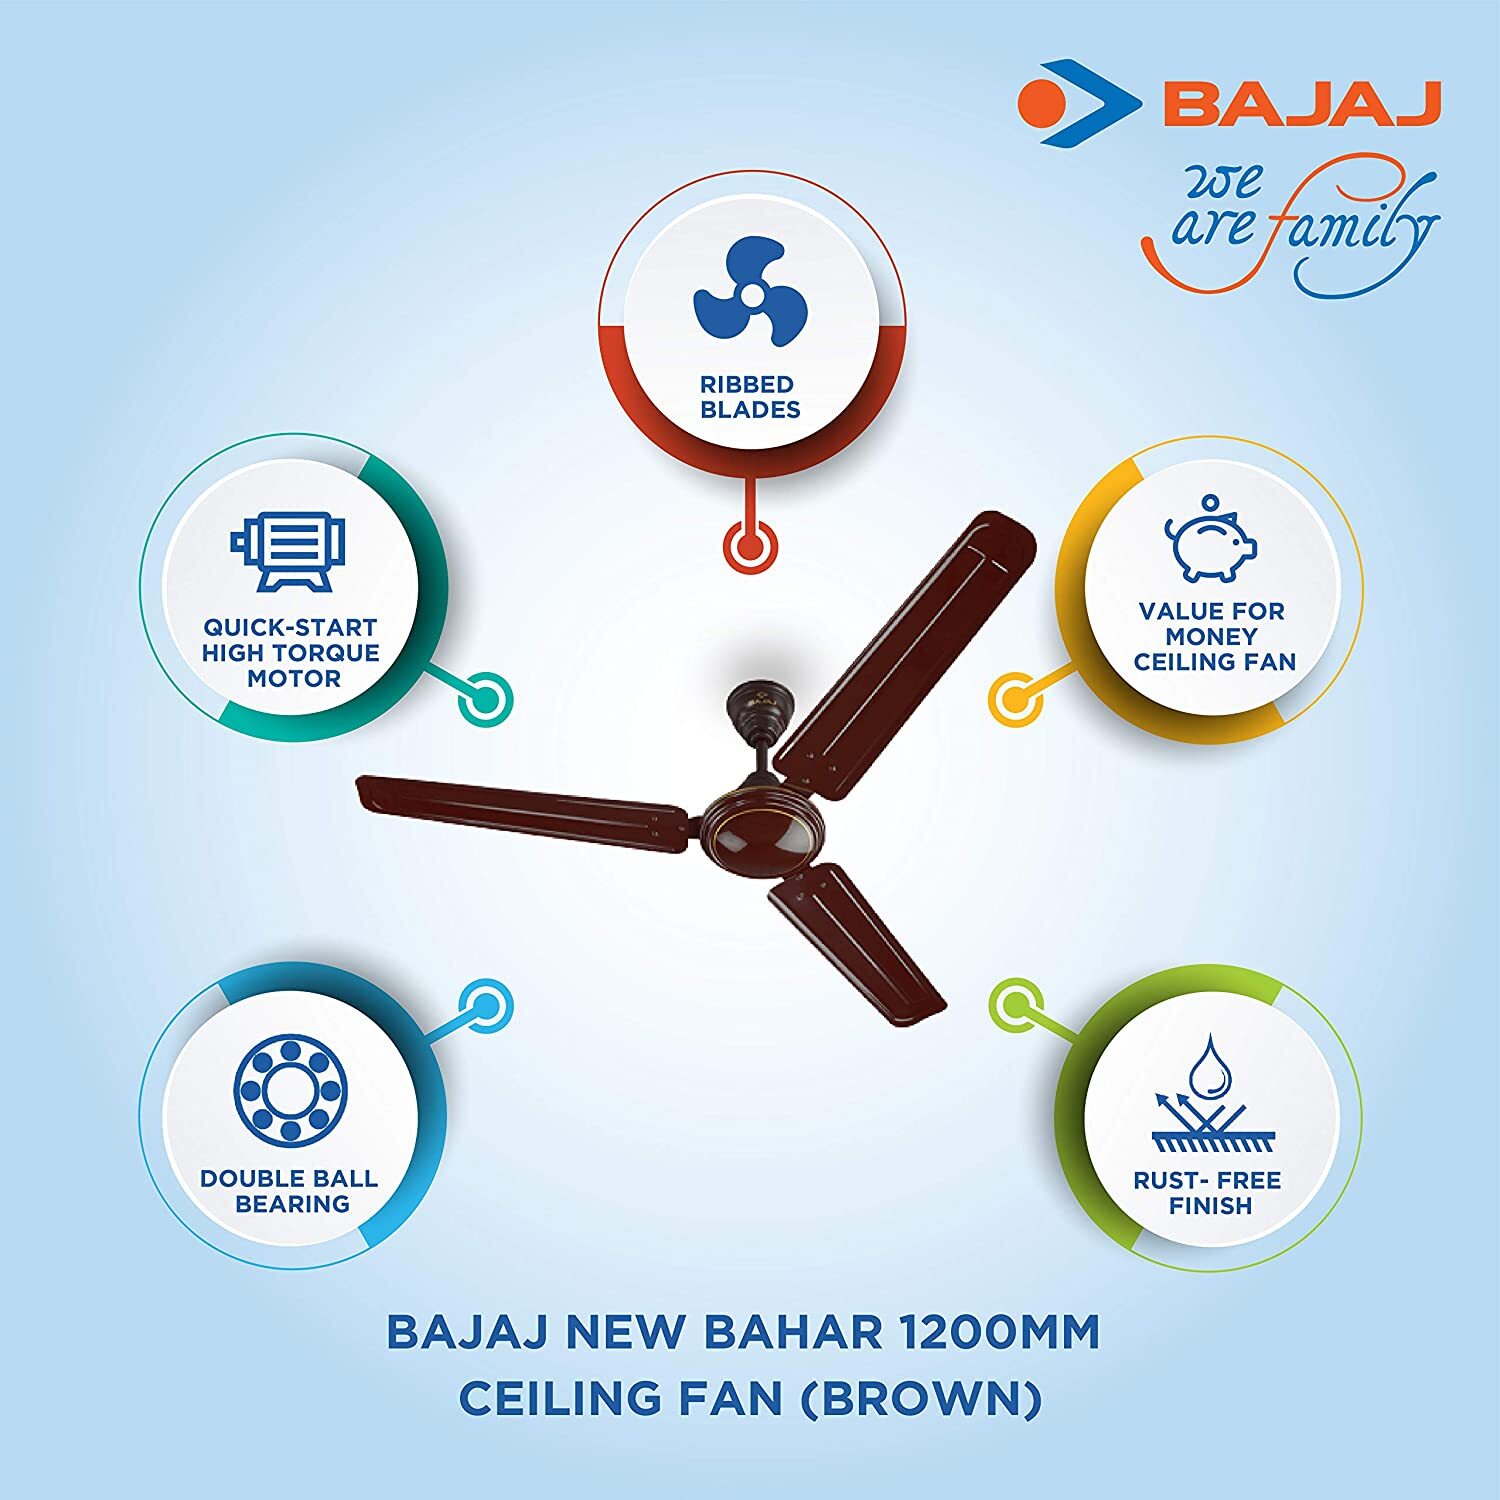 Bajaj New Bahar 1200mm Ceiling Fan (Brown)-M000000000396 www.mysocially.com